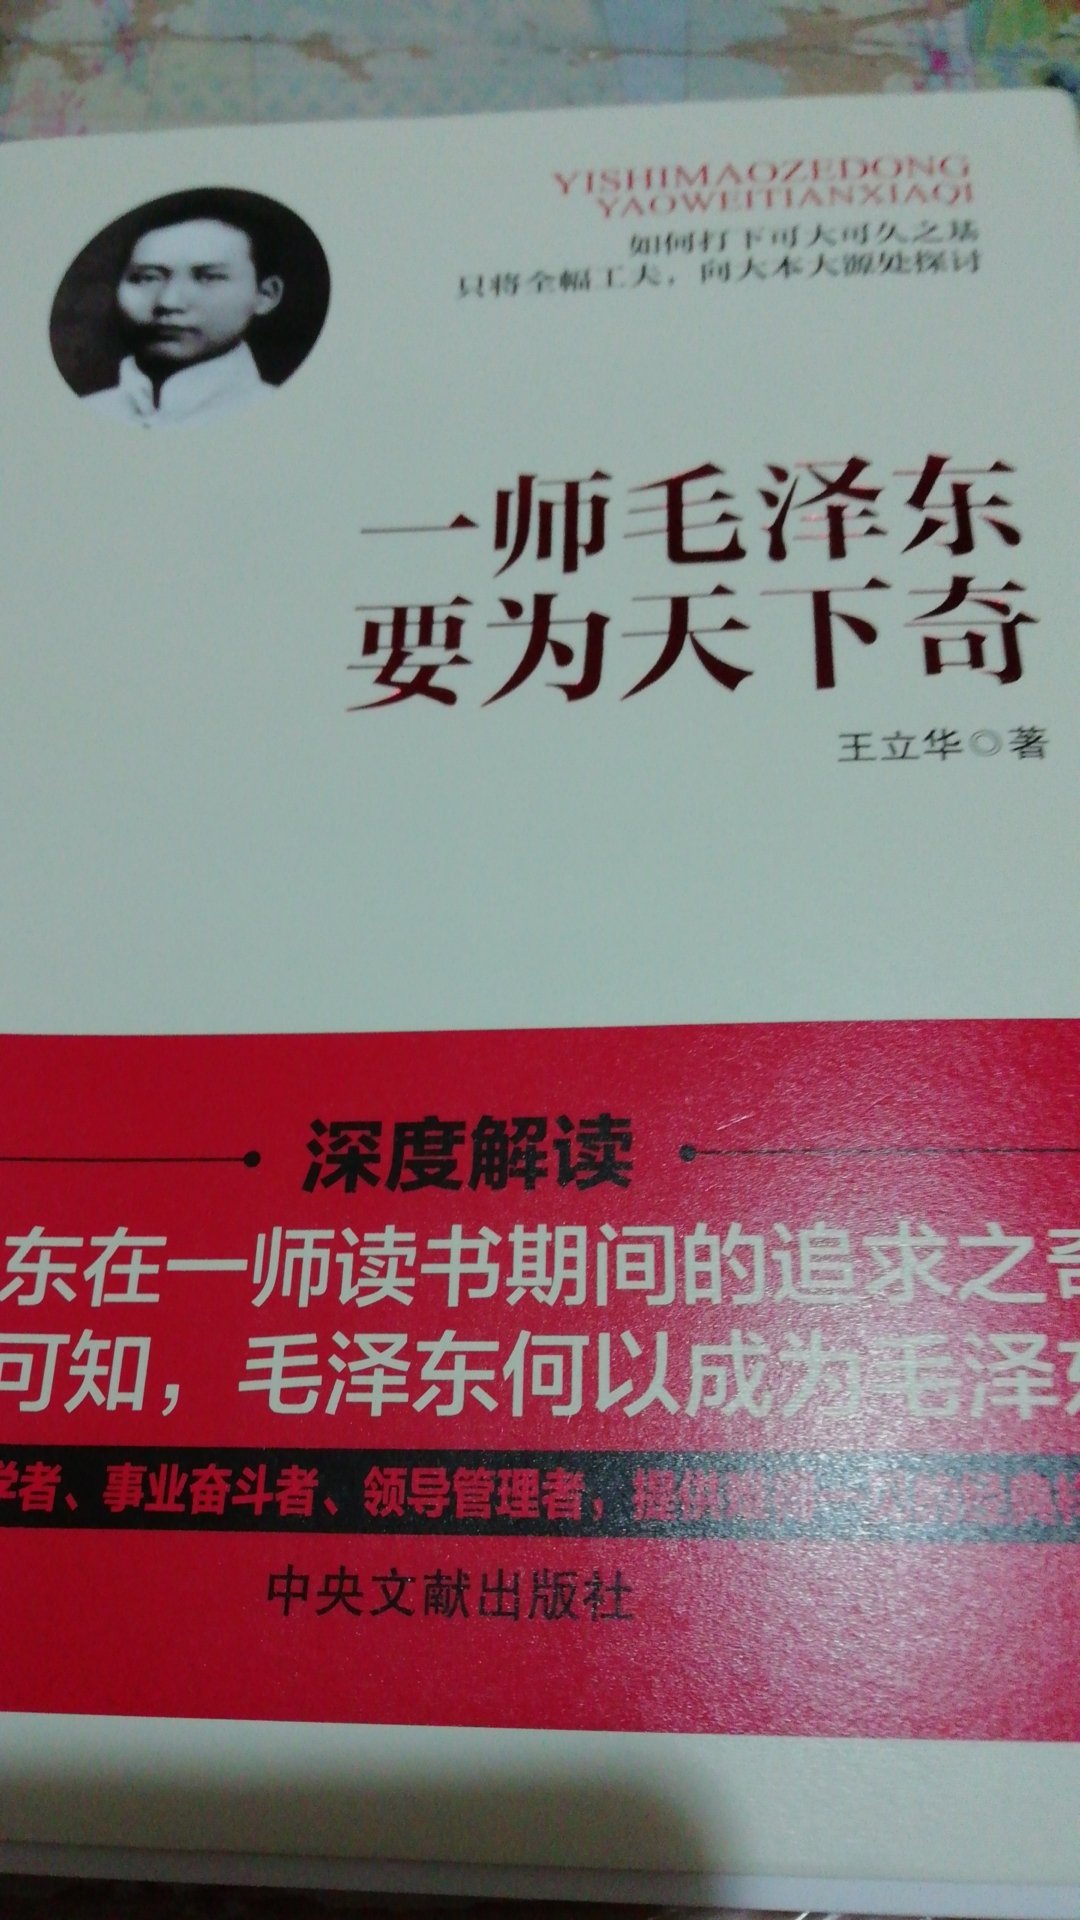 一师毛泽东要为天下奇一书讲述青年毛泽东立奇志、读奇书、交奇友、创奇事的方方面面，值得学习。